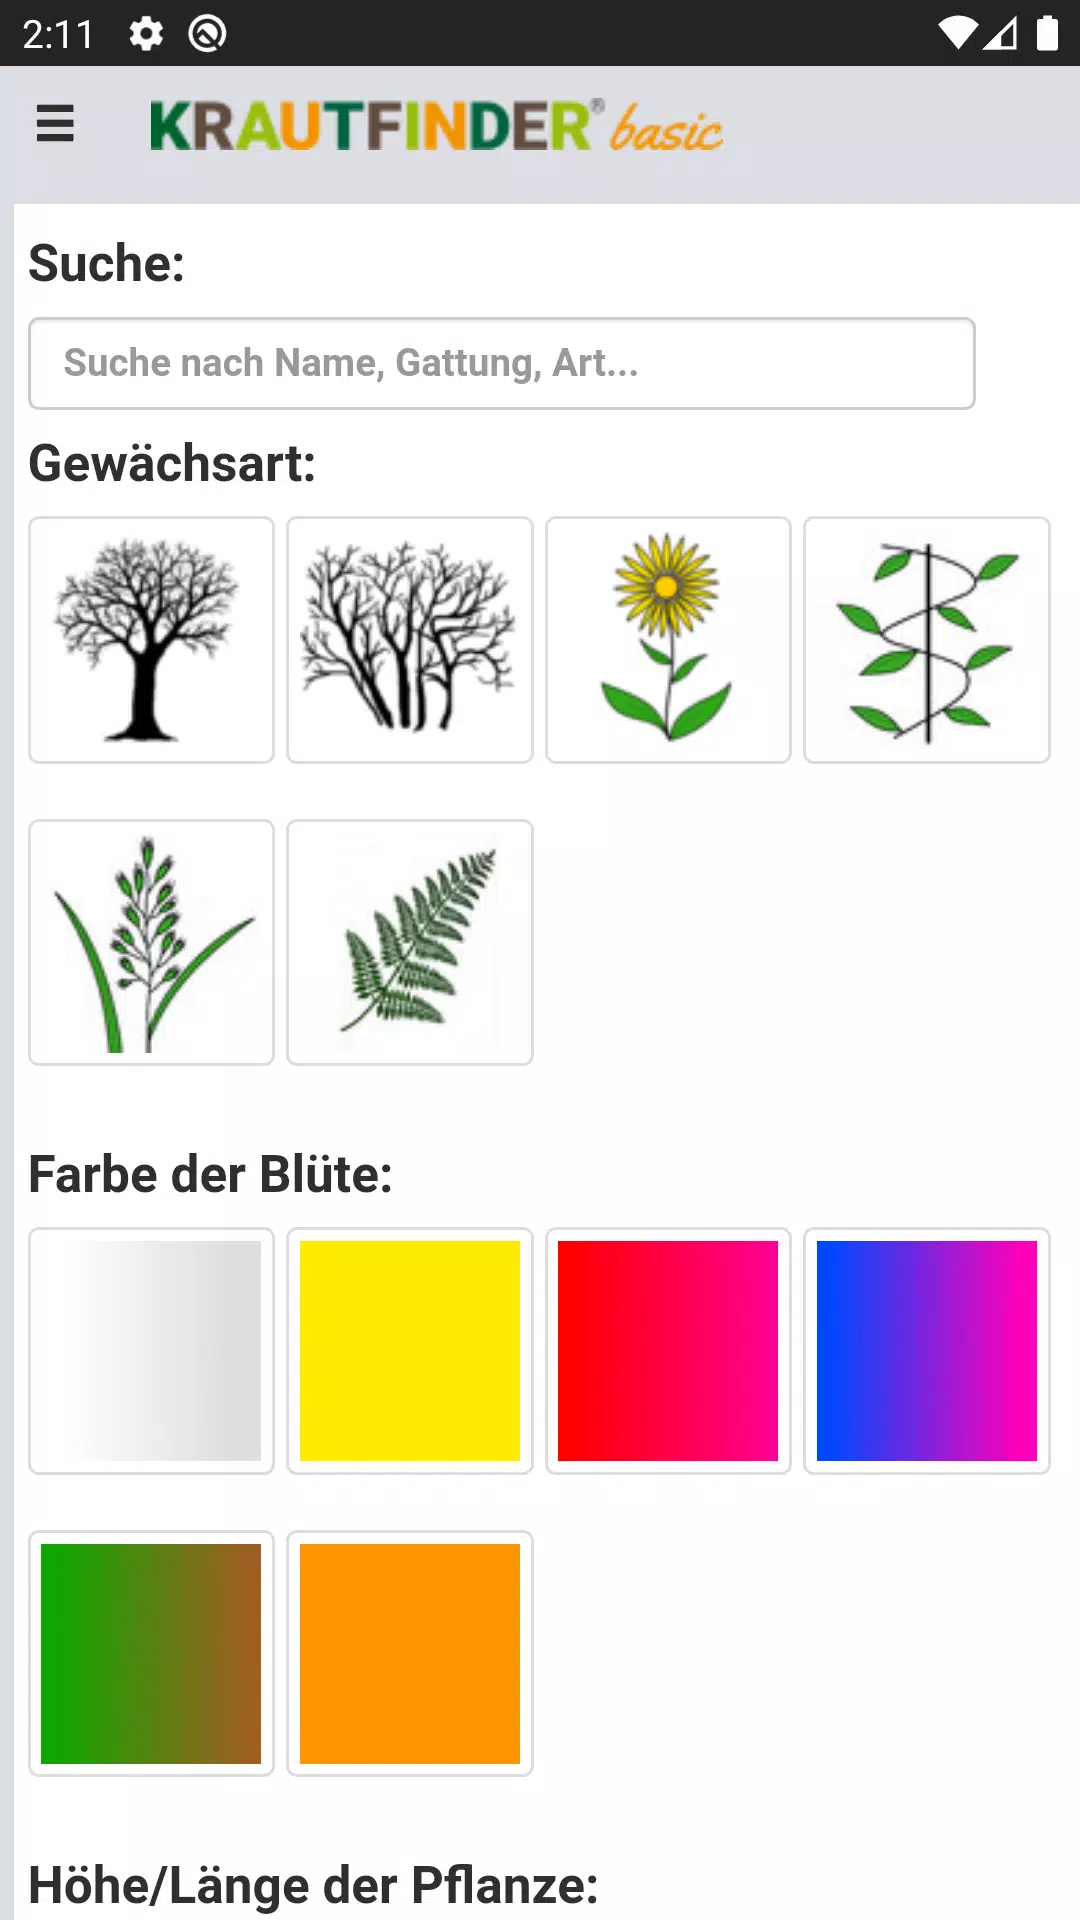 Krautfinder basic - 400 Pflanzen bestimmen for Android - APK Download